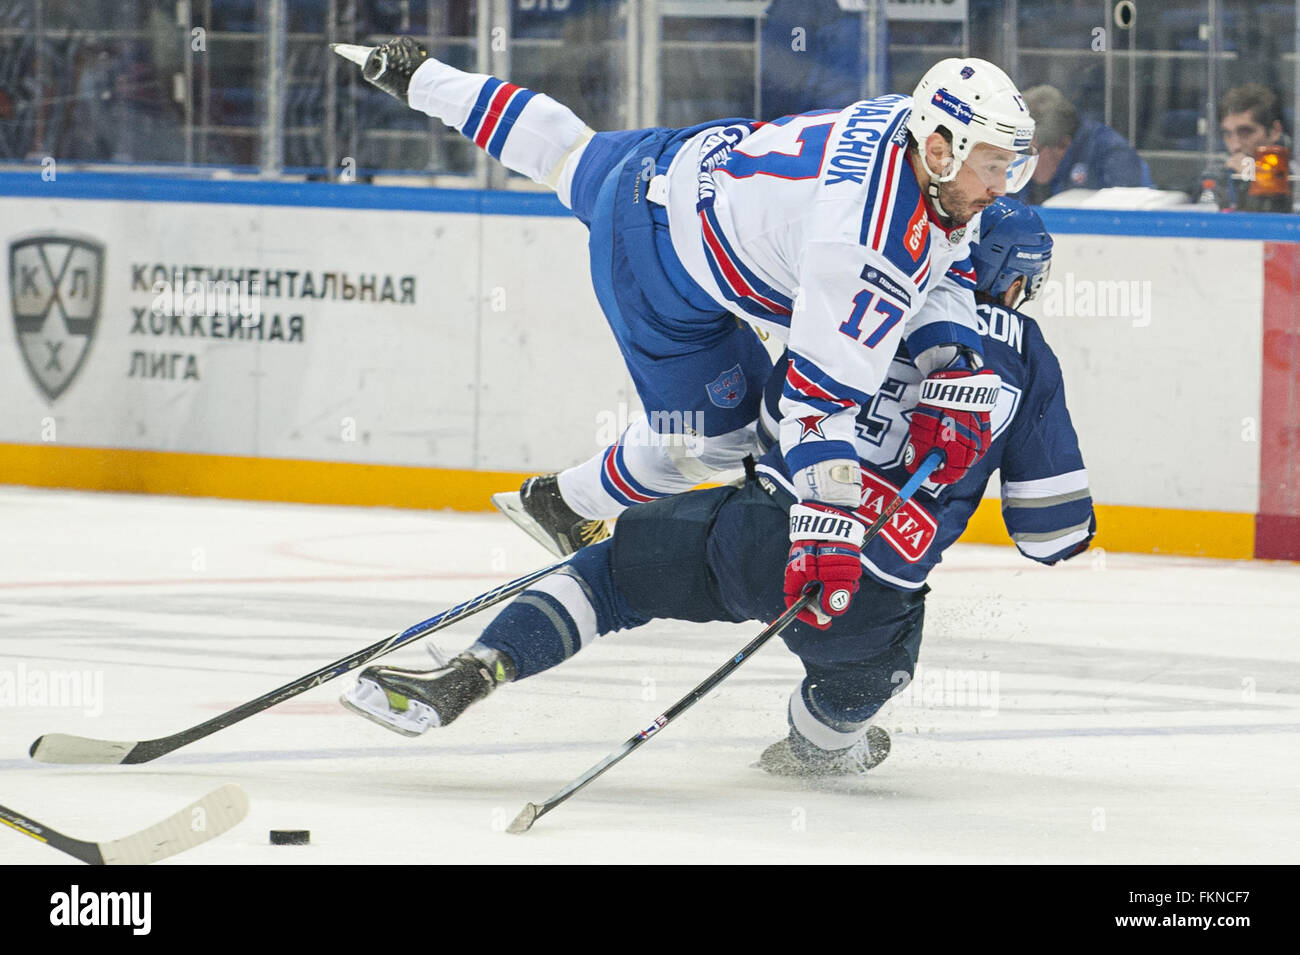 2012 KHL schedule: Evgeni Malkin, Ilya Kovalchuk in action